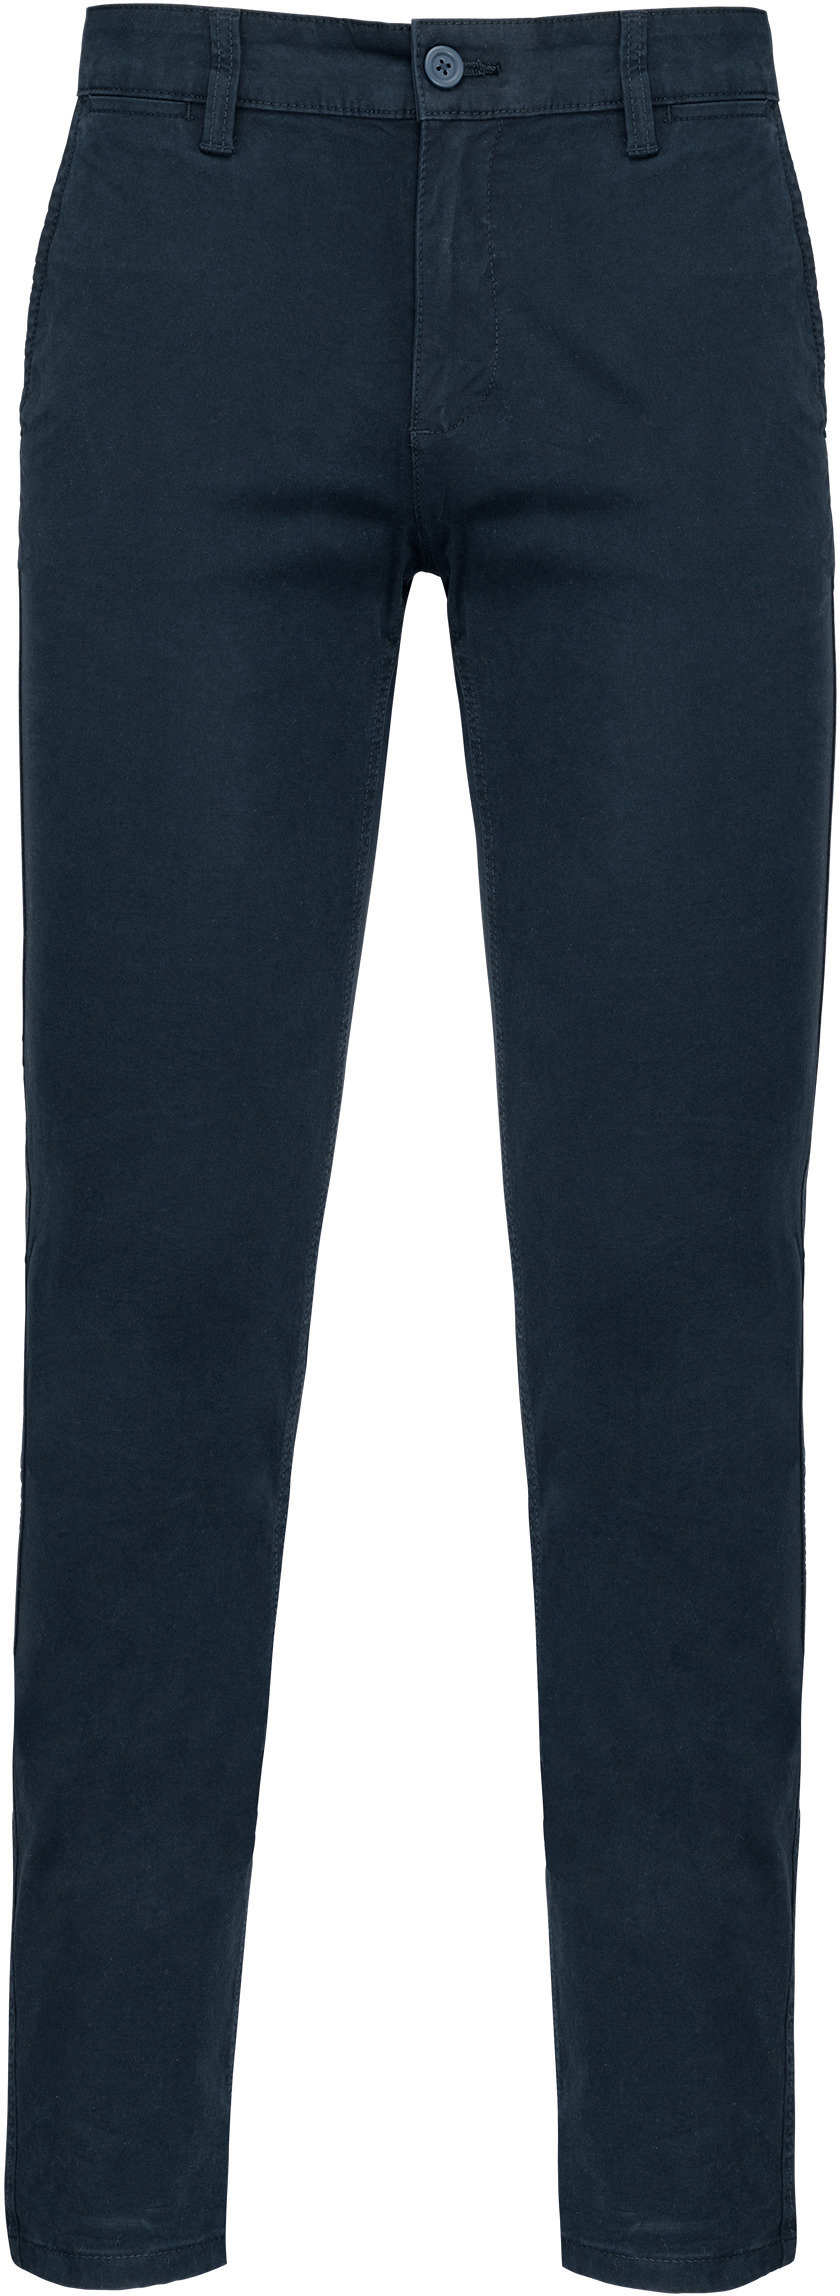 Pánské kalhoty CHINO Barva: dark navy, Velikost: 38